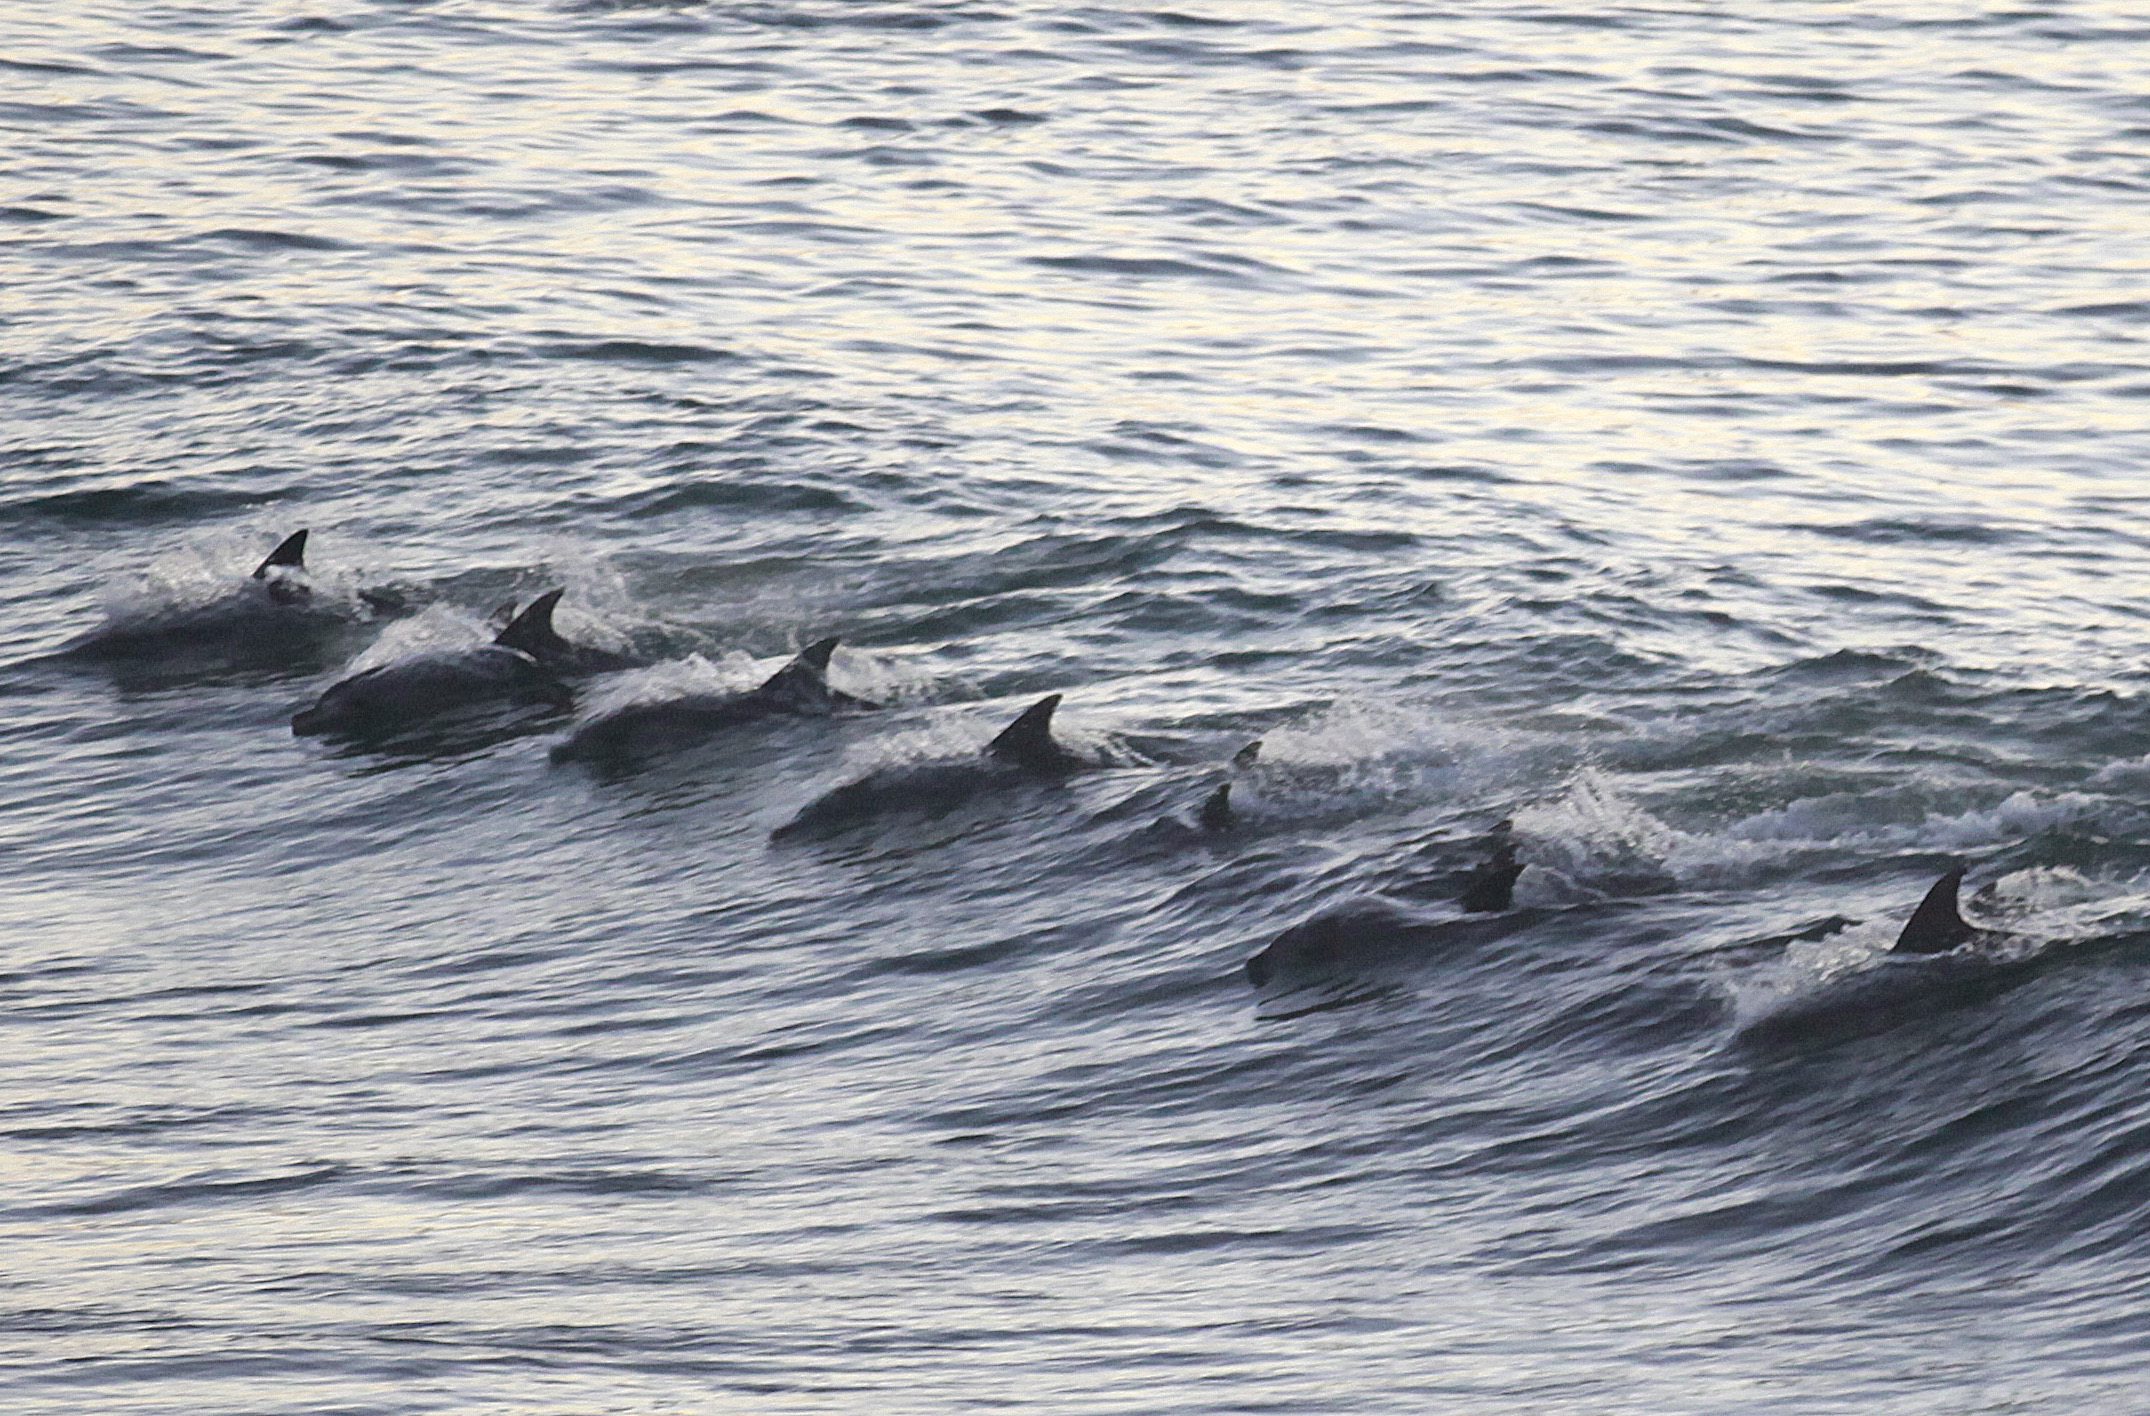 Причините за подобни масови самоубийства на делфини си остават загадка